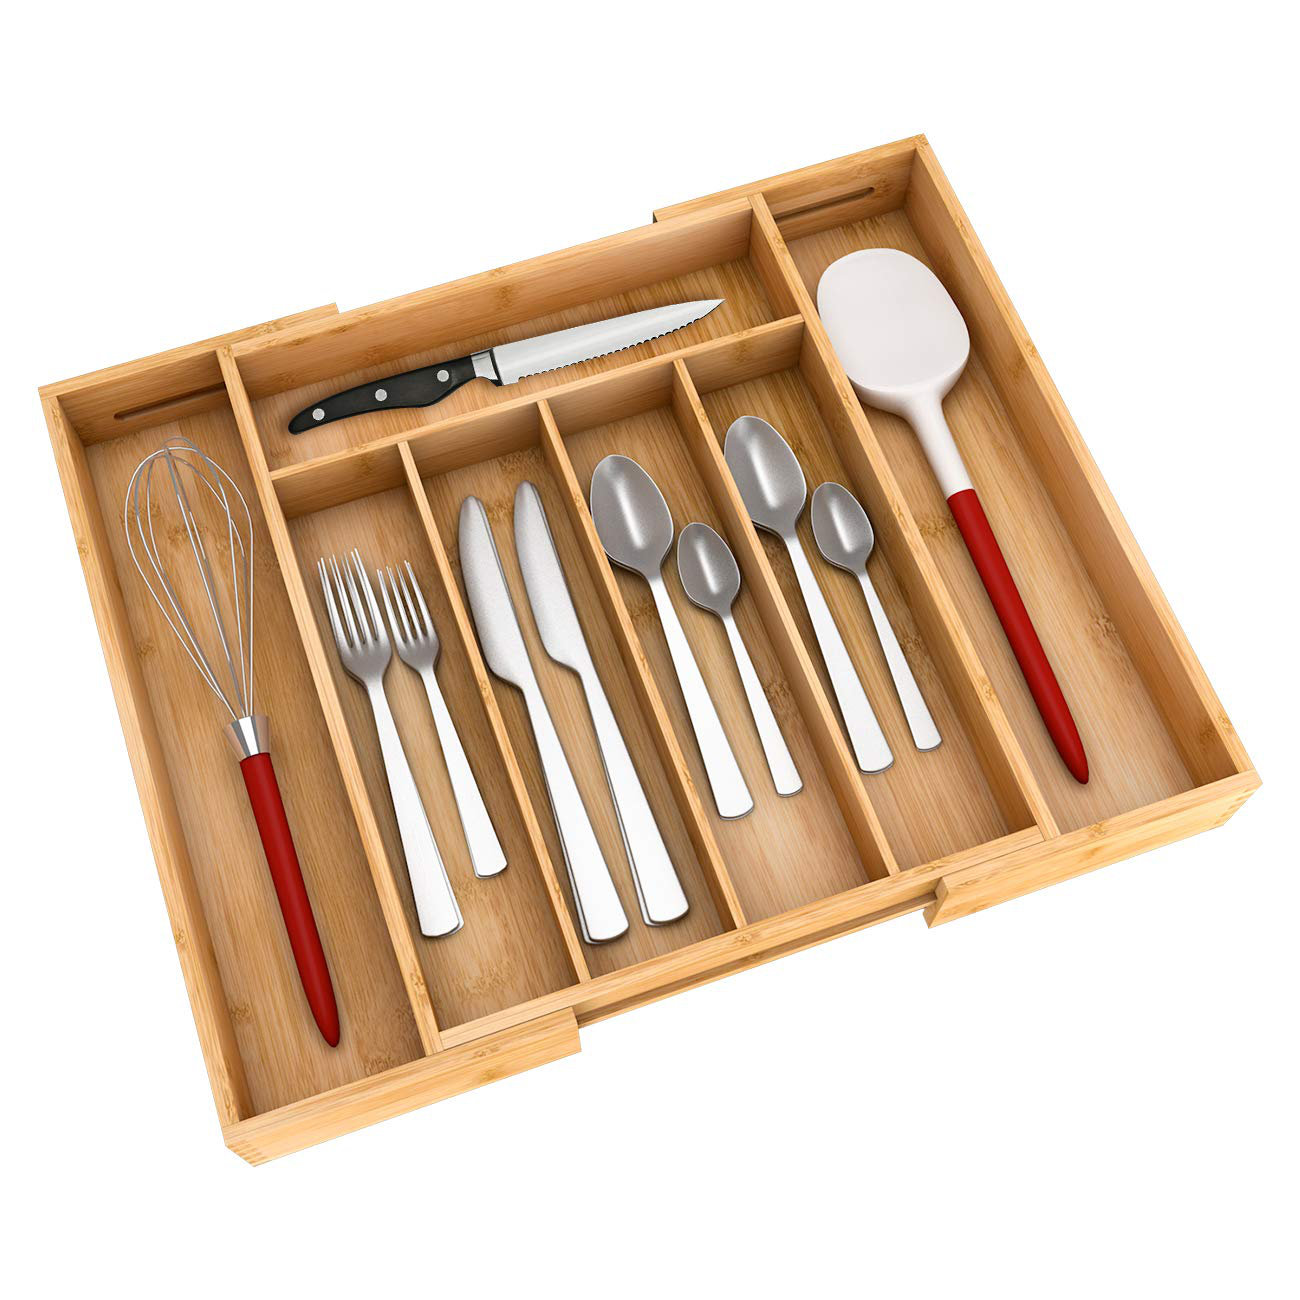 https://assets.wfcdn.com/im/17579616/compr-r85/1397/139786927/suzanna-244-h-x-1594-w-x-128-d-adjustable-flatware-kitchen-utensils-drawer-organizer.jpg